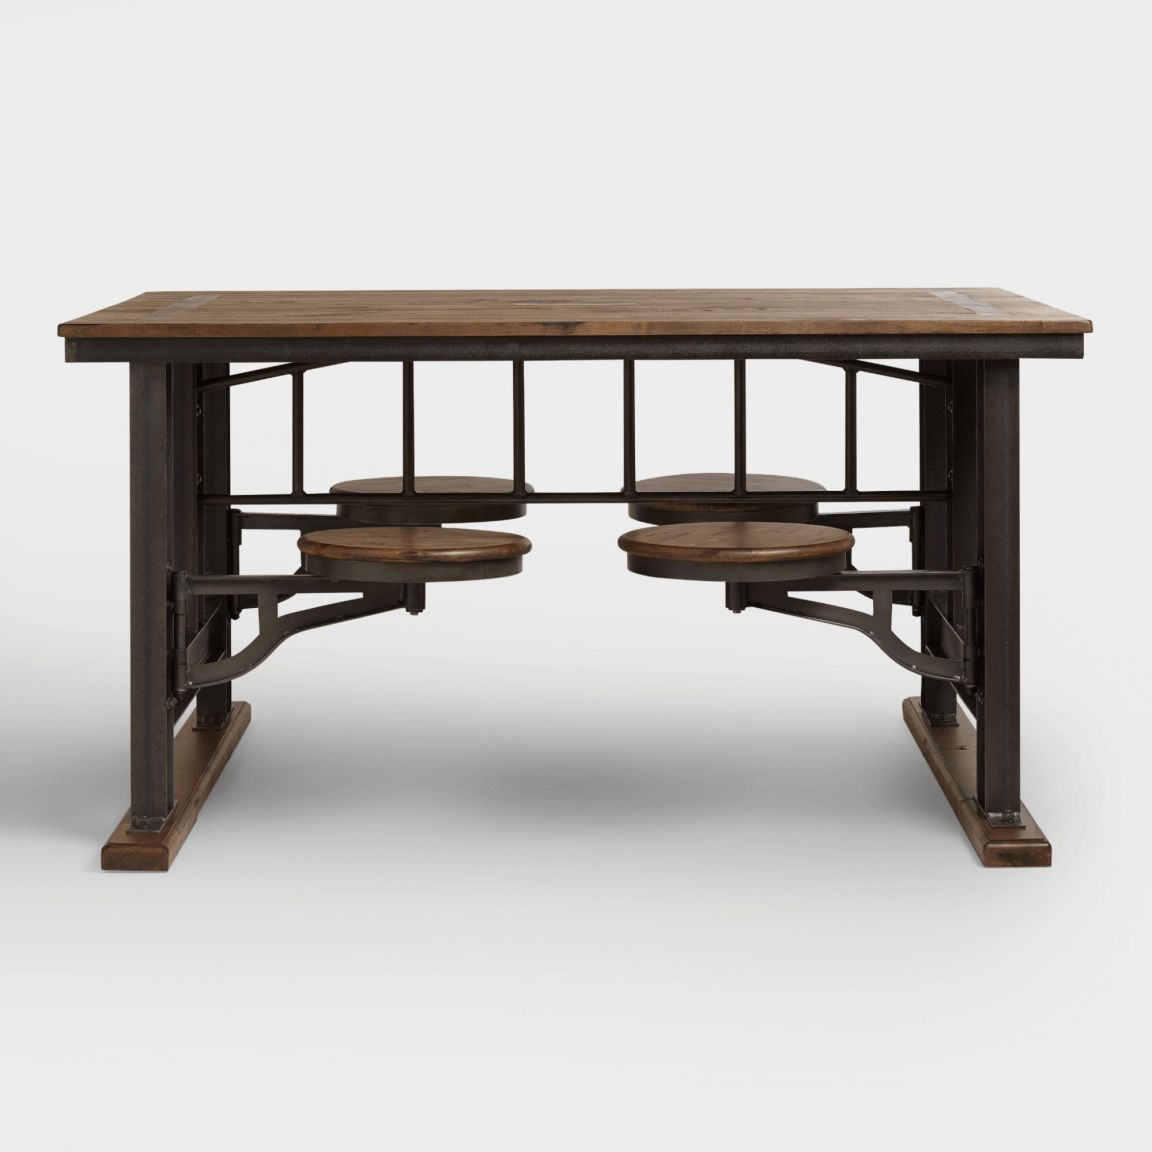 Mặt bàn được làm từ nhiều chất liệu khác nhau như kính cường lực, gỗ công nghiệp